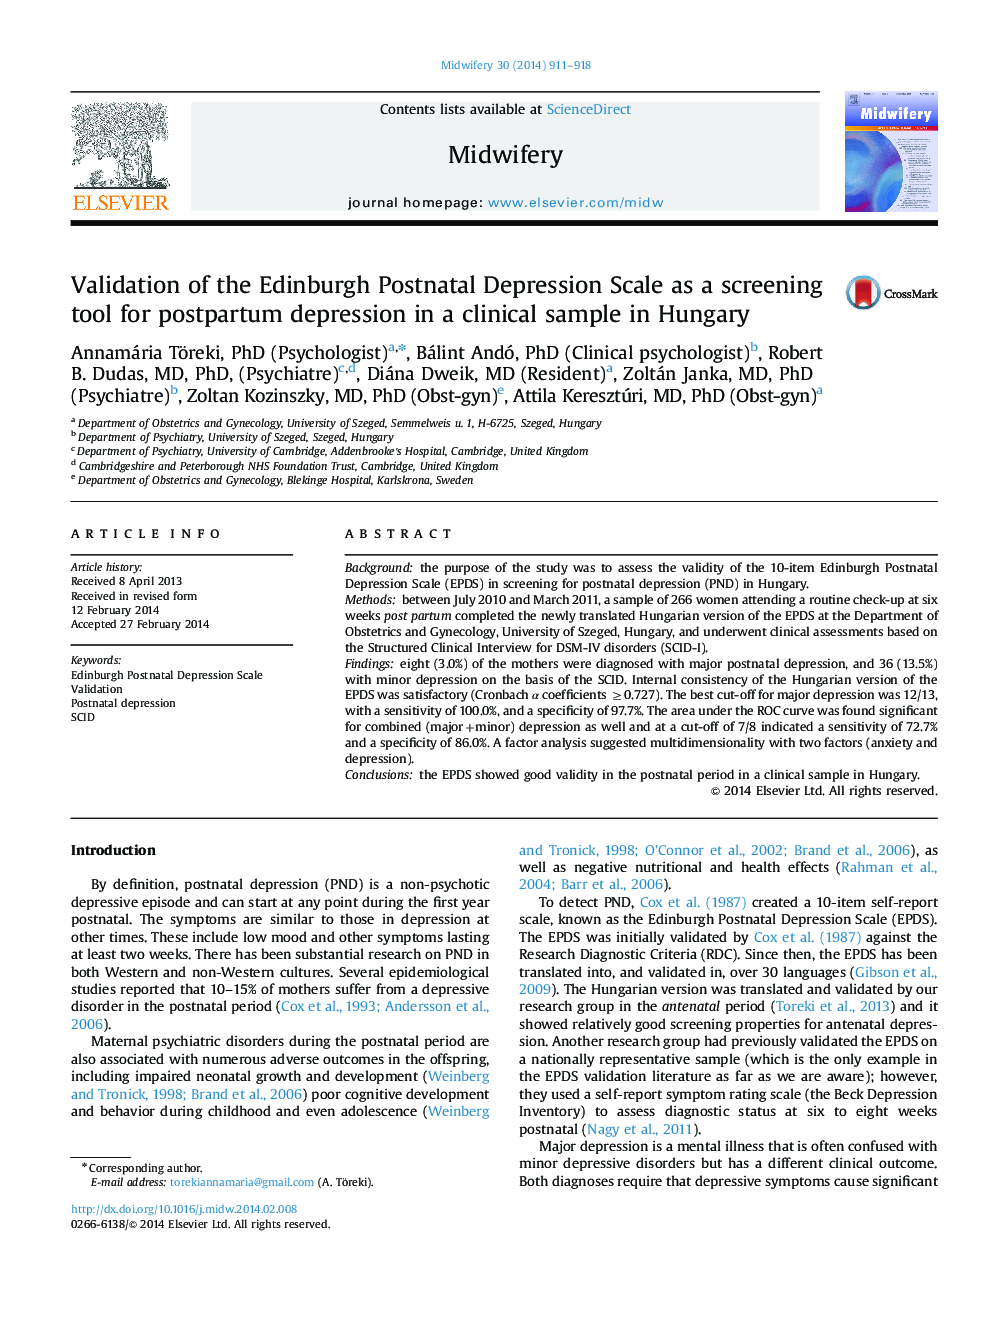 اعتبار مقیاس افسردگی پس از زایمان ادینبورگ به عنوان یک ابزار غربالگری برای افسردگی پس از زایمان در یک نمونه بالینی در مجارستان 